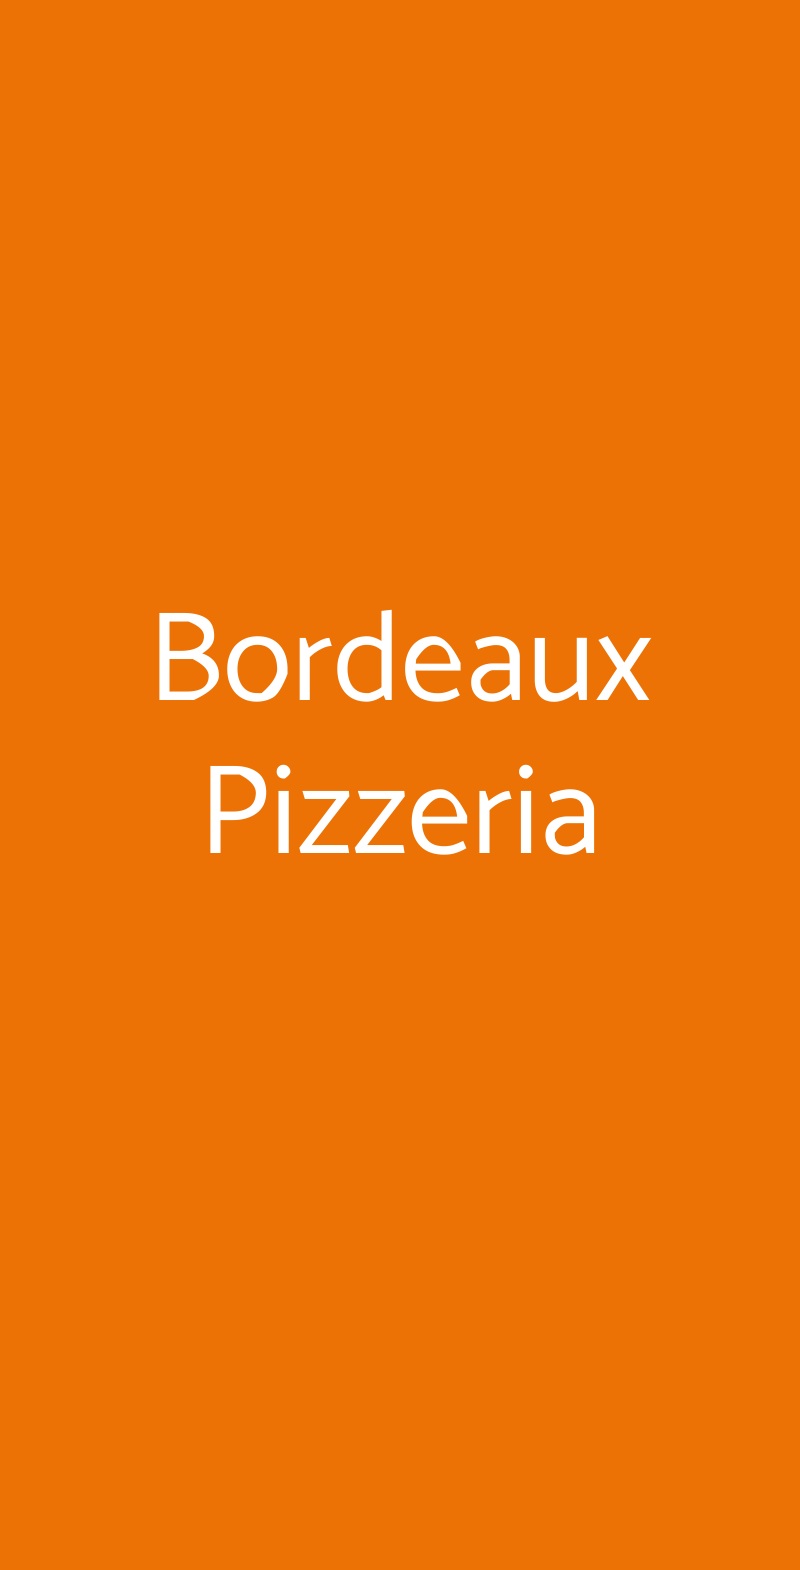 Bordeaux Pizzeria Monza menù 1 pagina